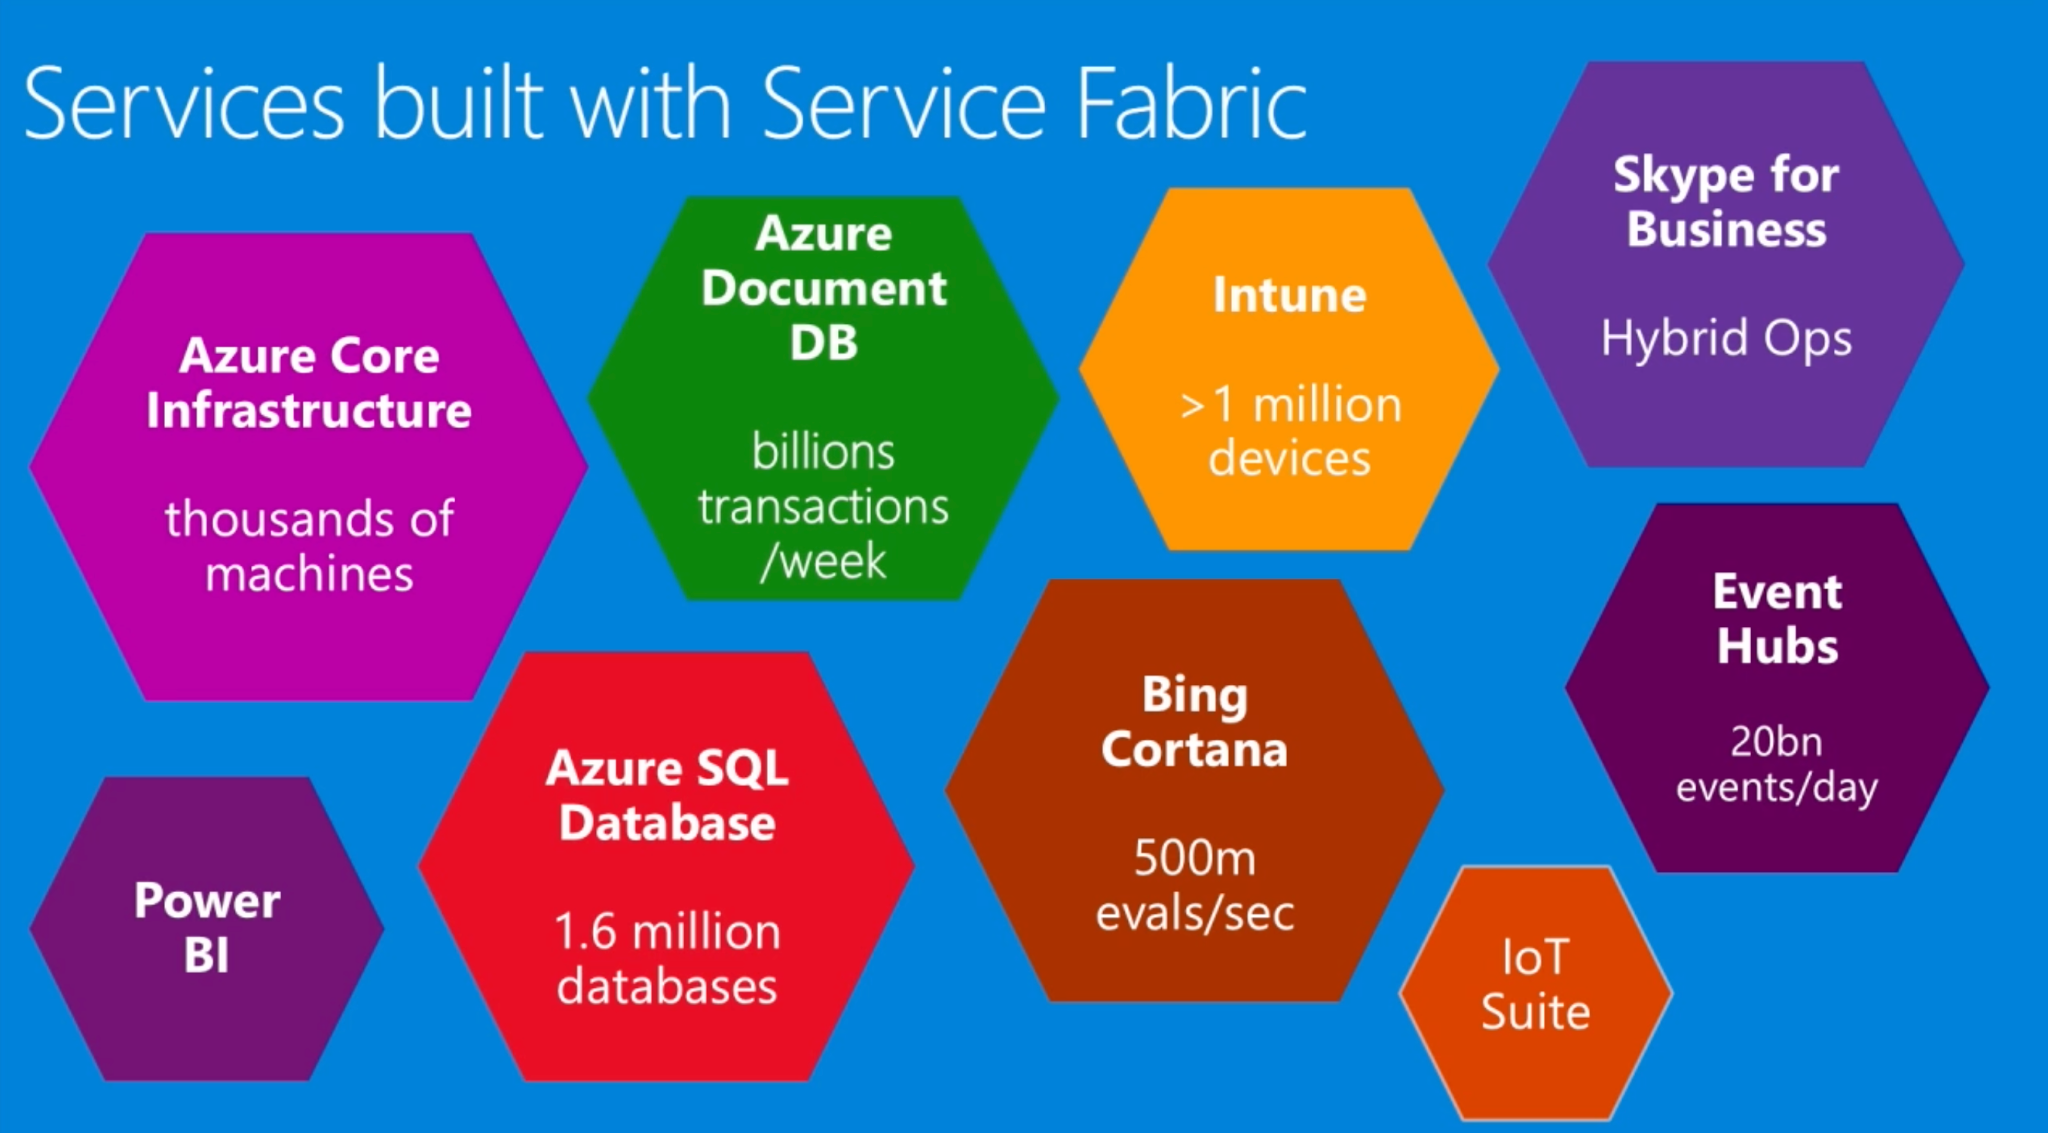 図中のService Fabricを利用したサービスには、Azure Core Infrastructure、Azure Document DB、Intune、Skype for Business、Event Hubs、Bing Cortana、Azure SQL Database、Power BI、IoT Suiteが含まれます。